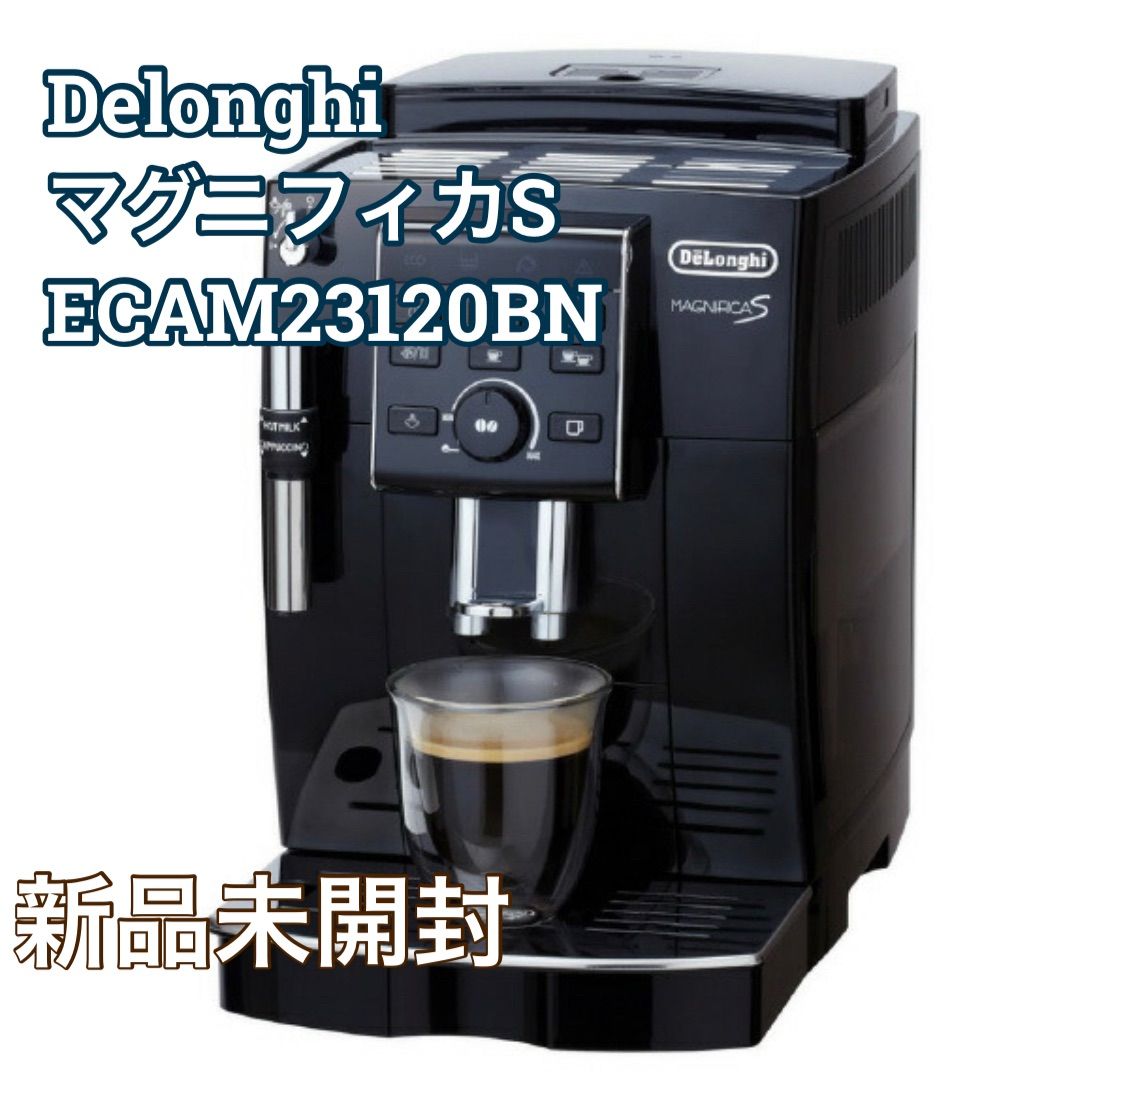 デロンギ 全自動コーヒーマシン マグニフィカS ブラック ECAM23120BN